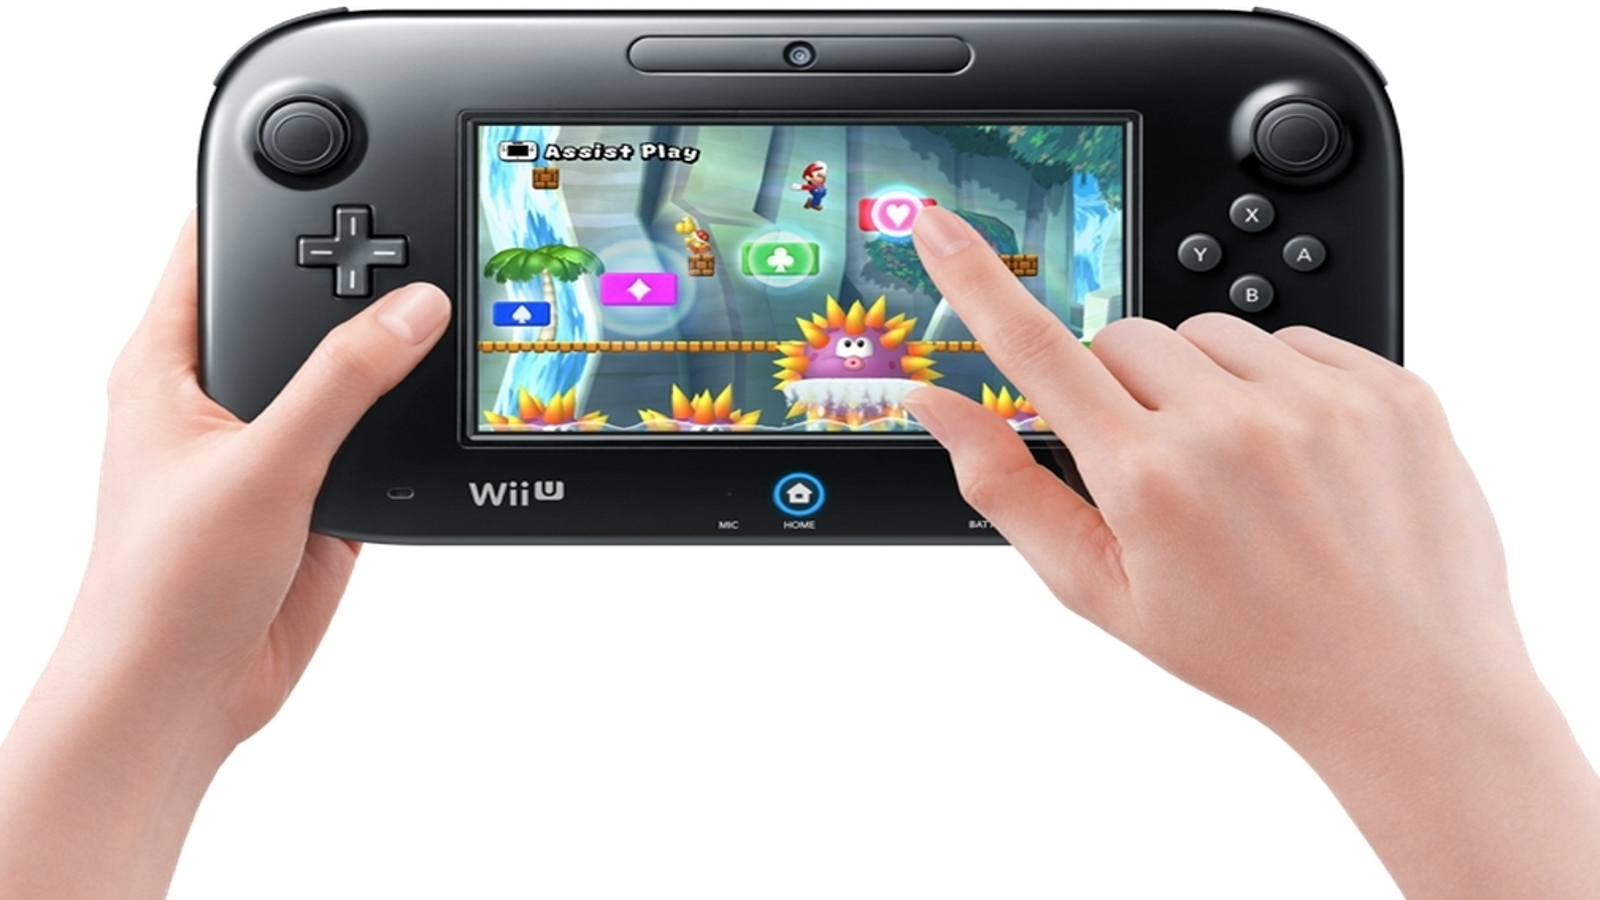 CONSOLE NO AUGE DO POTENCIAL - VALE A PENA UM Wii U EM 2022? 